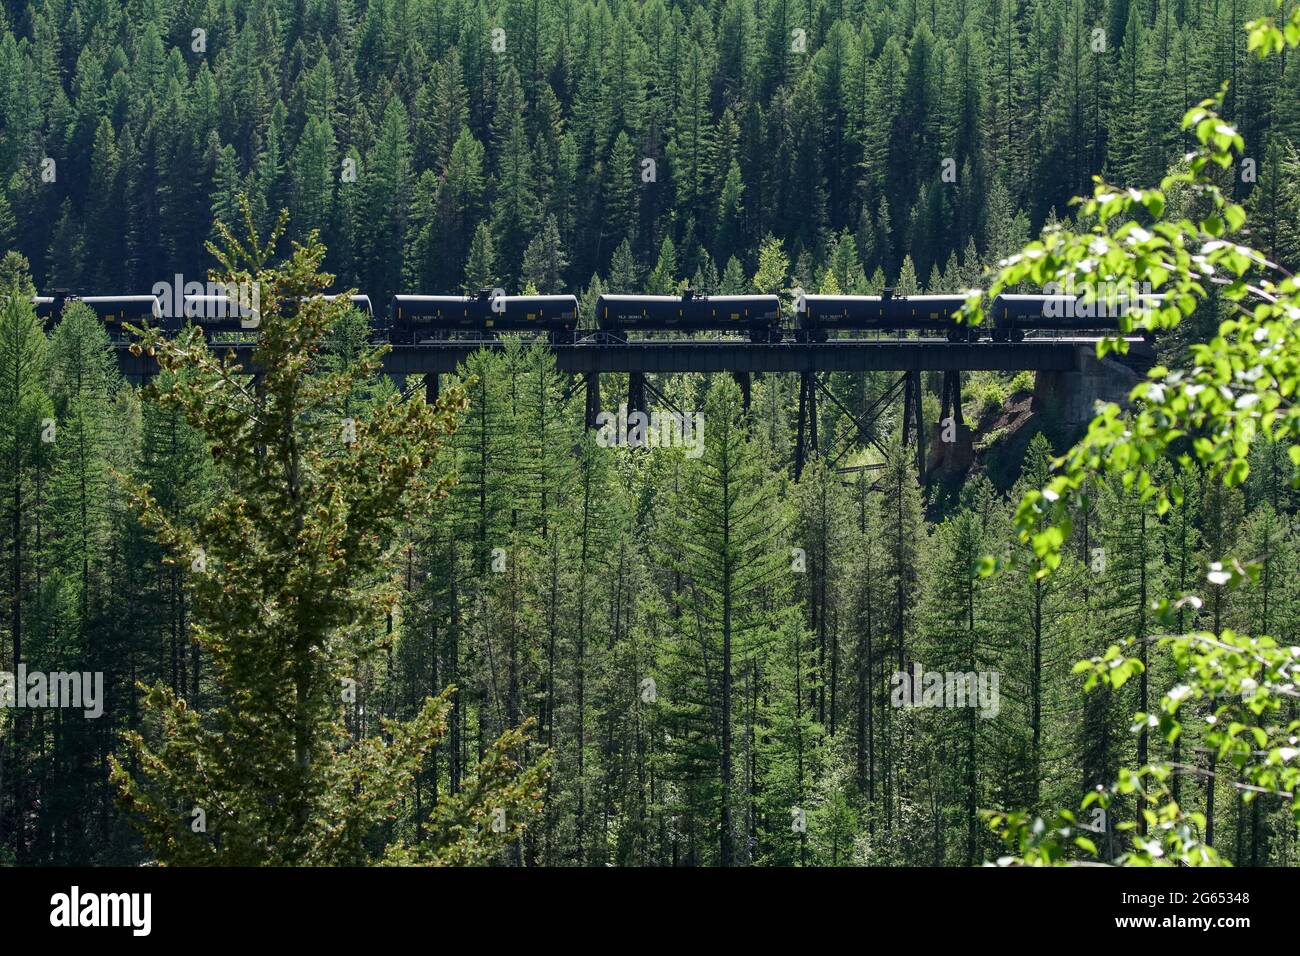 Les voitures de train sont repérées sur un pont élevé alors qu'elles se ruent dans une zone fortement boisée Banque D'Images